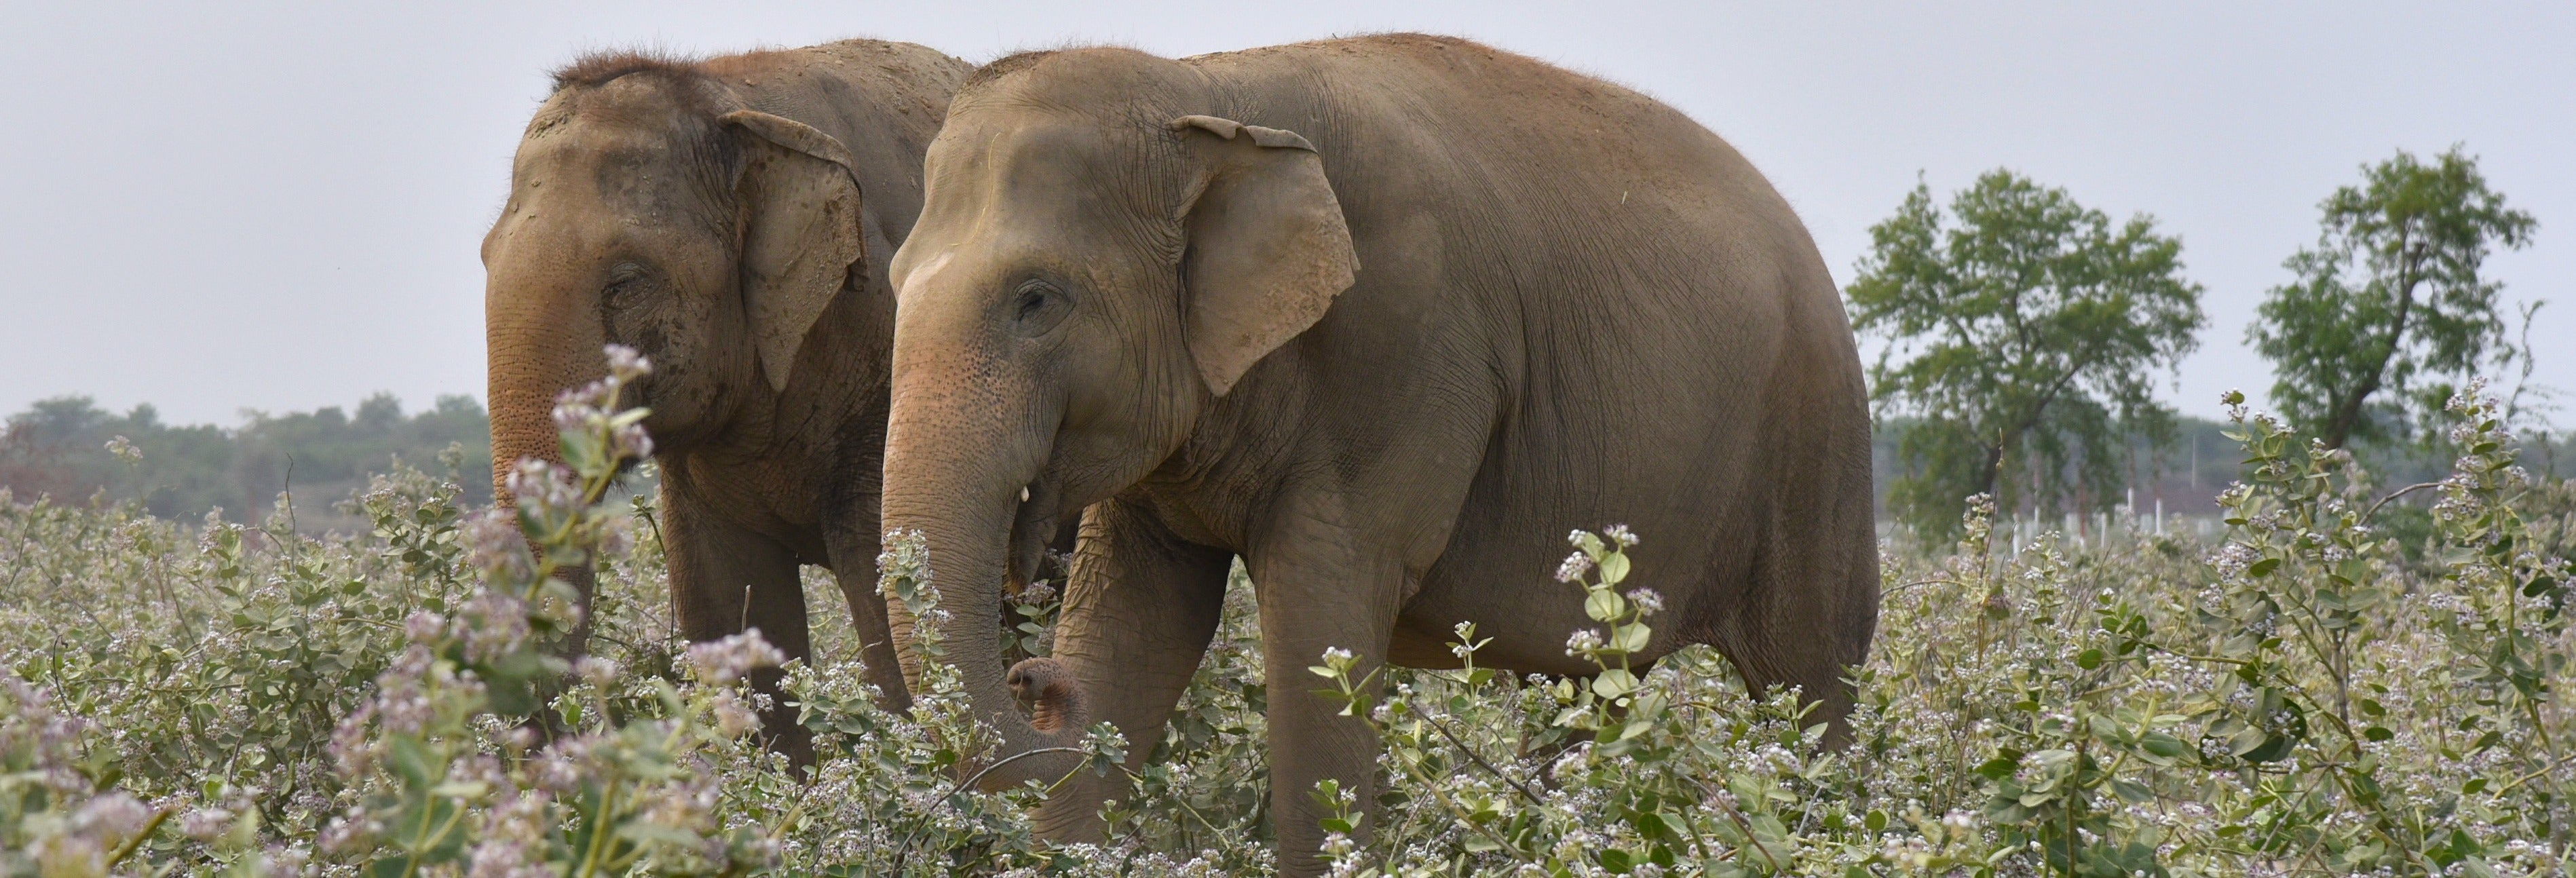 Excursão ao Centro de Preservação e Cuidado de Elefantes